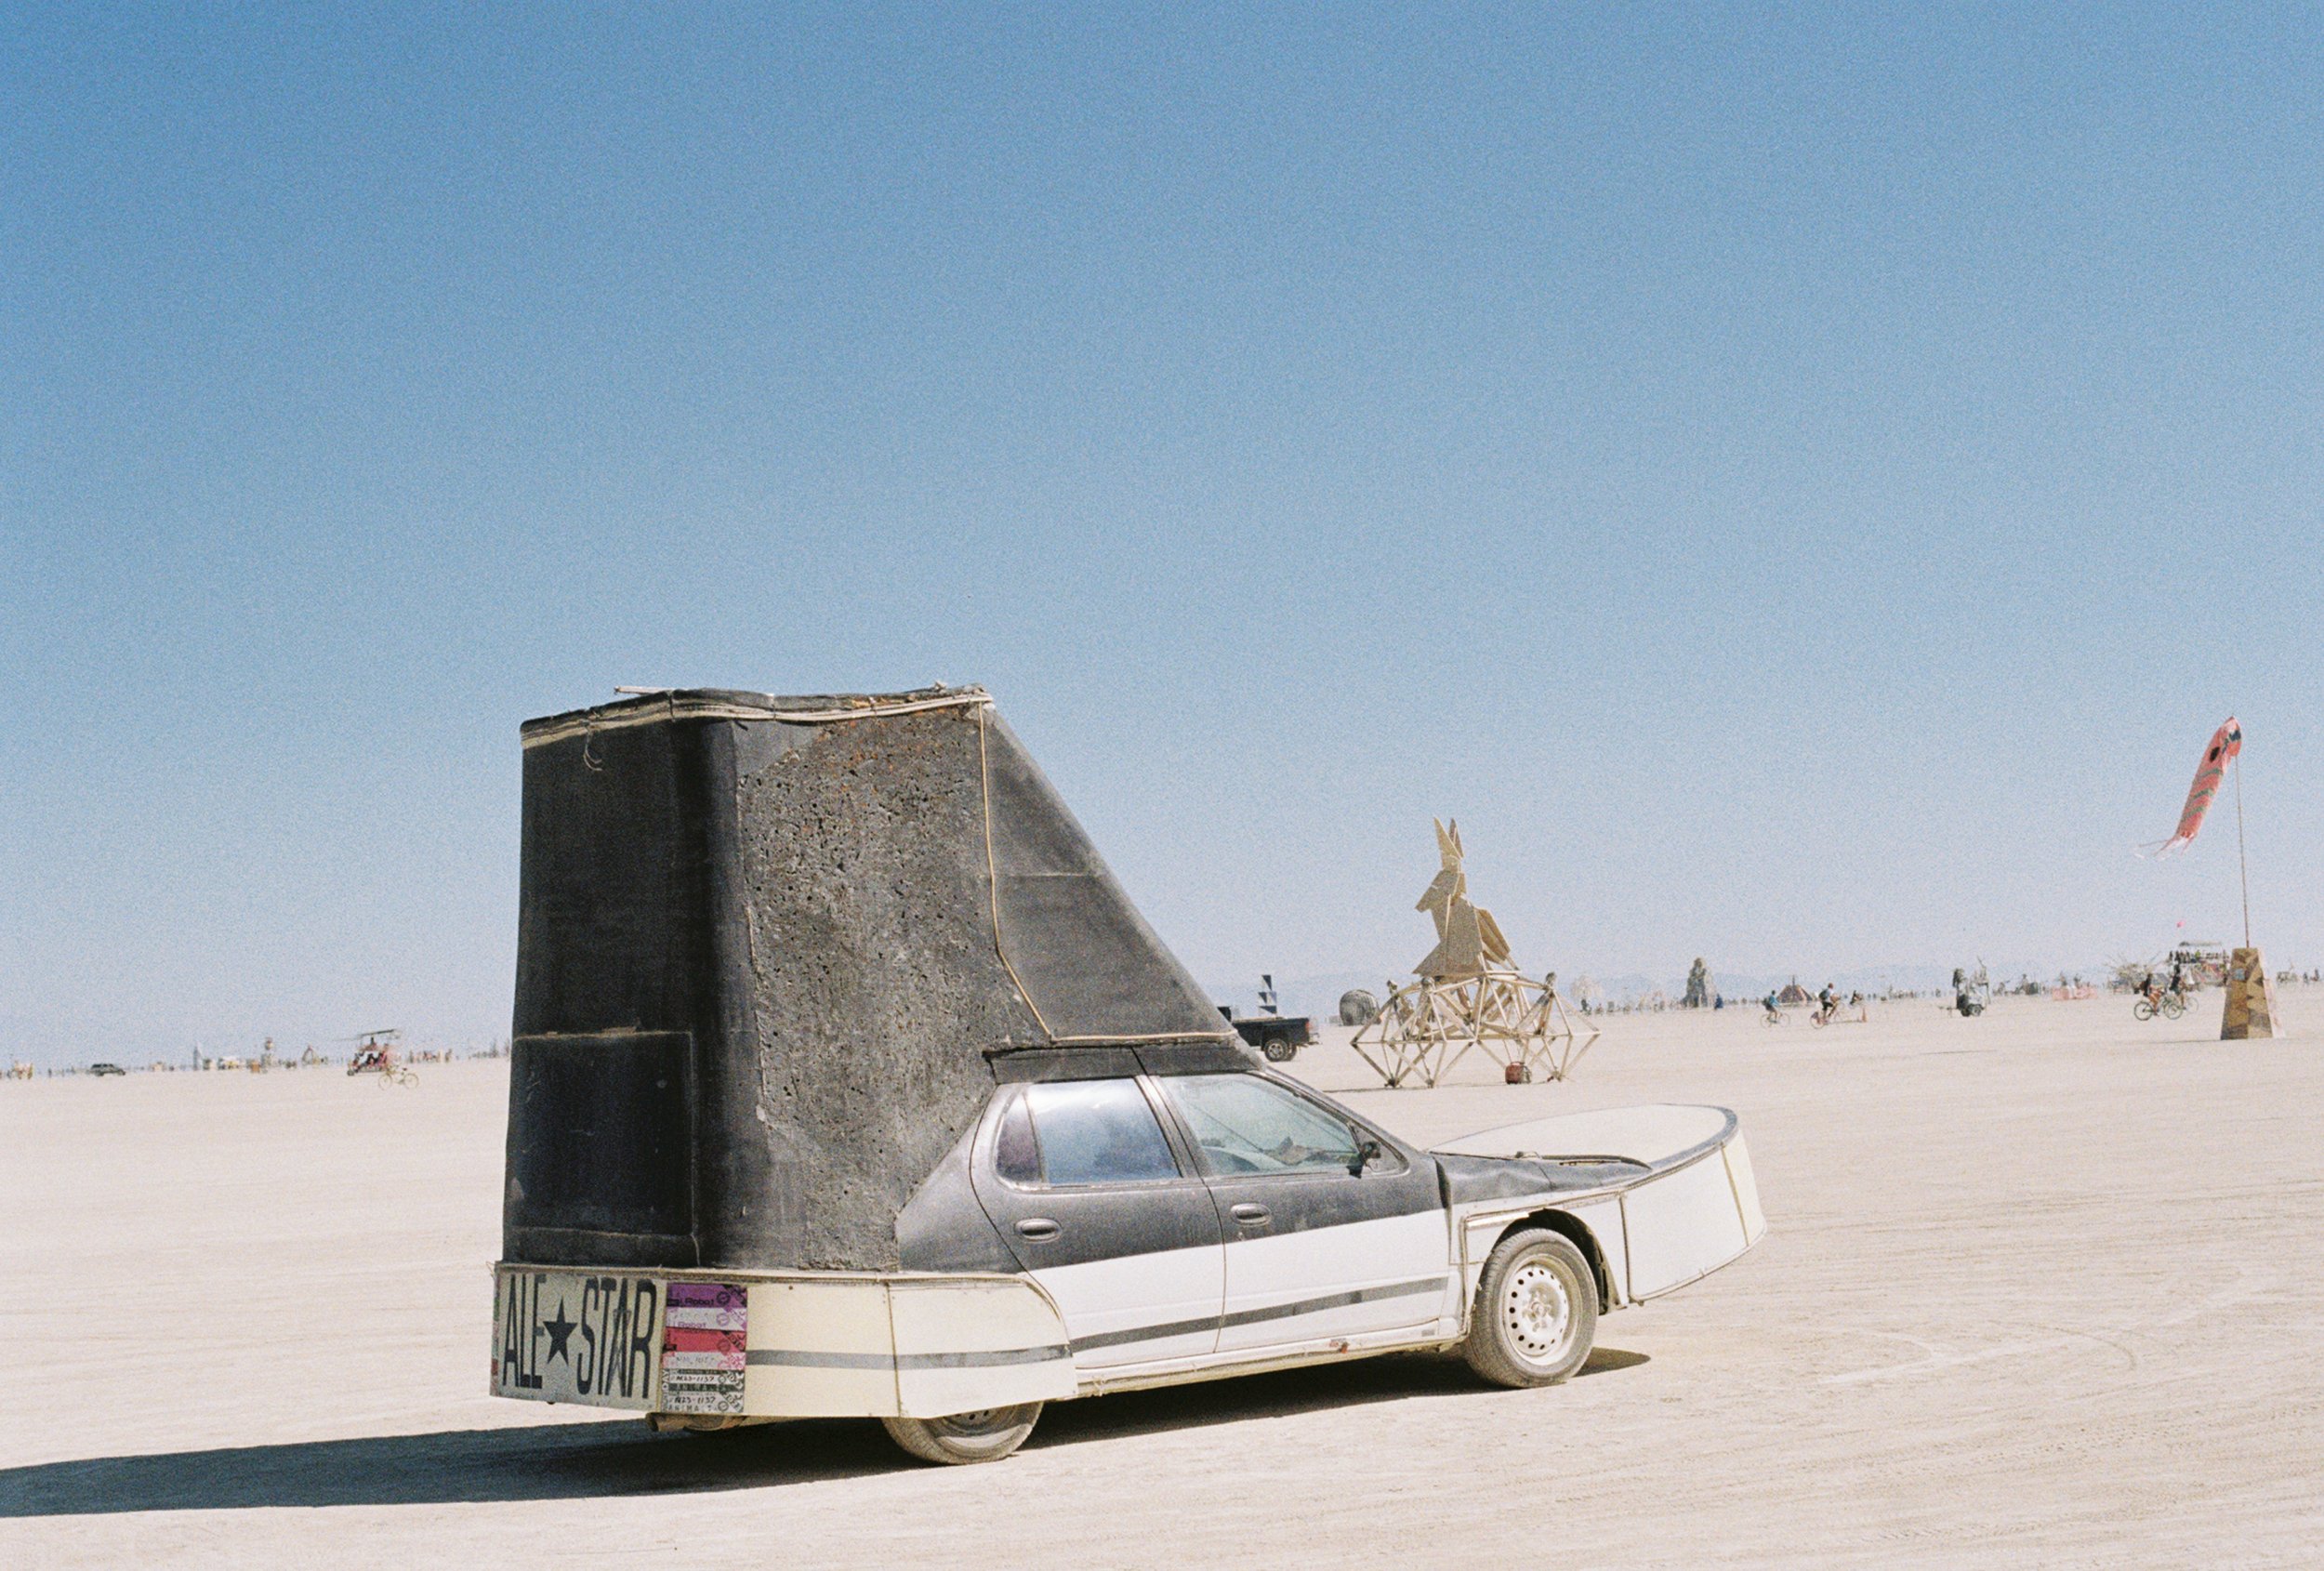 Shoe Art Car at Burning Man